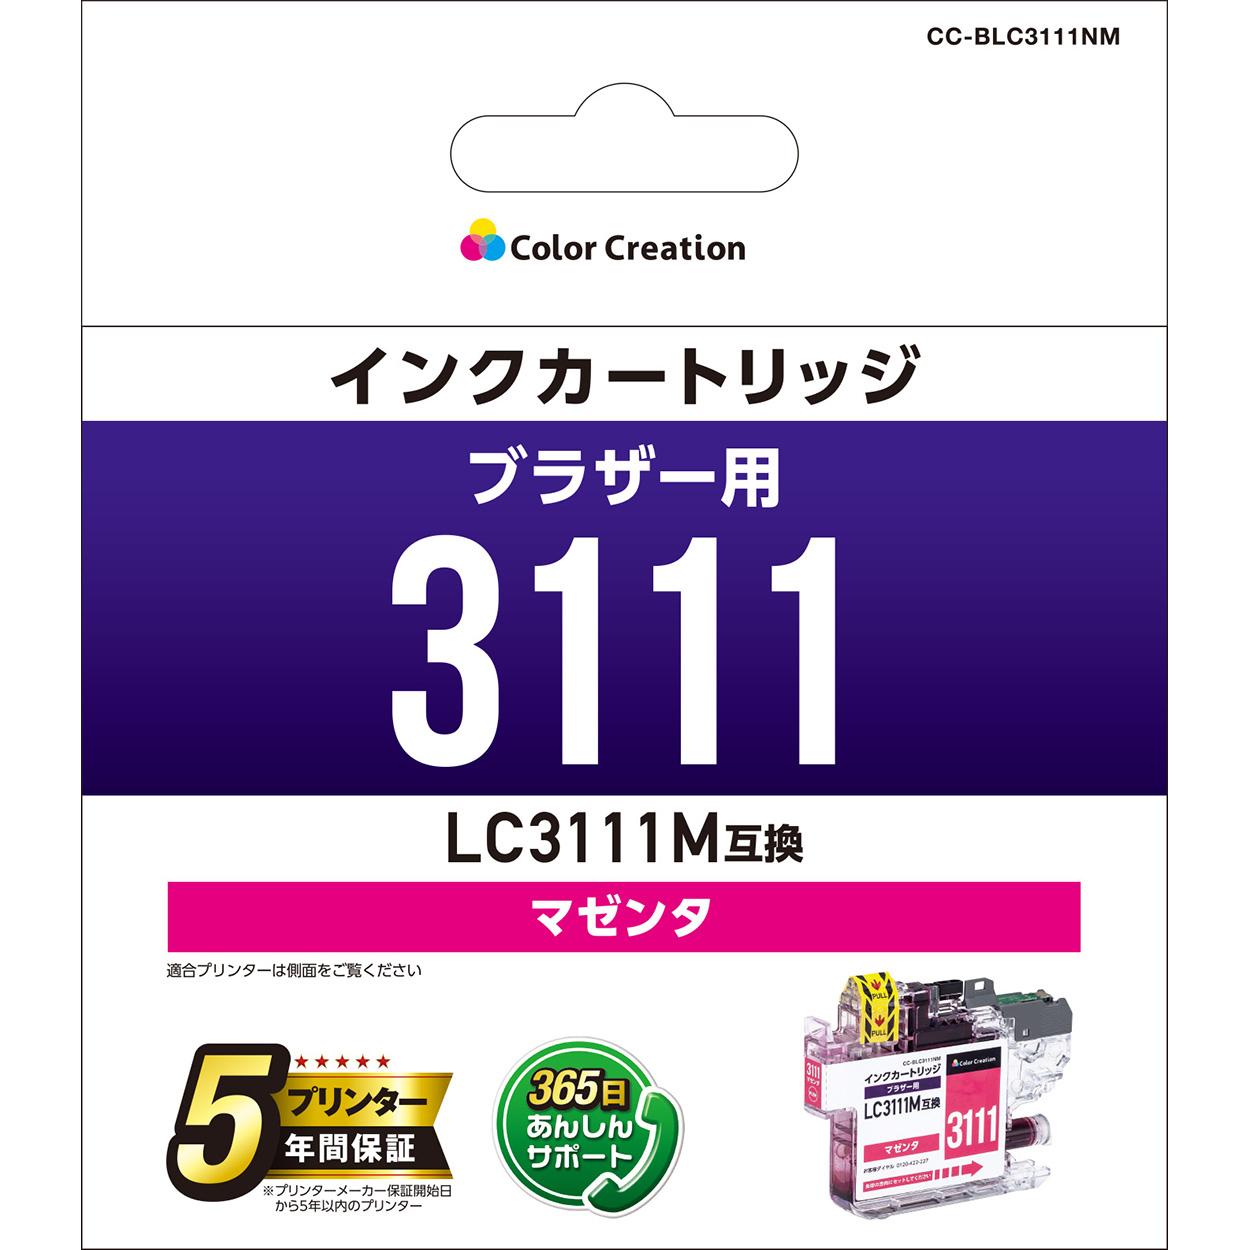 カラークリエーション　インクカートリッジ(CC-BLC3111NM) パッケージ